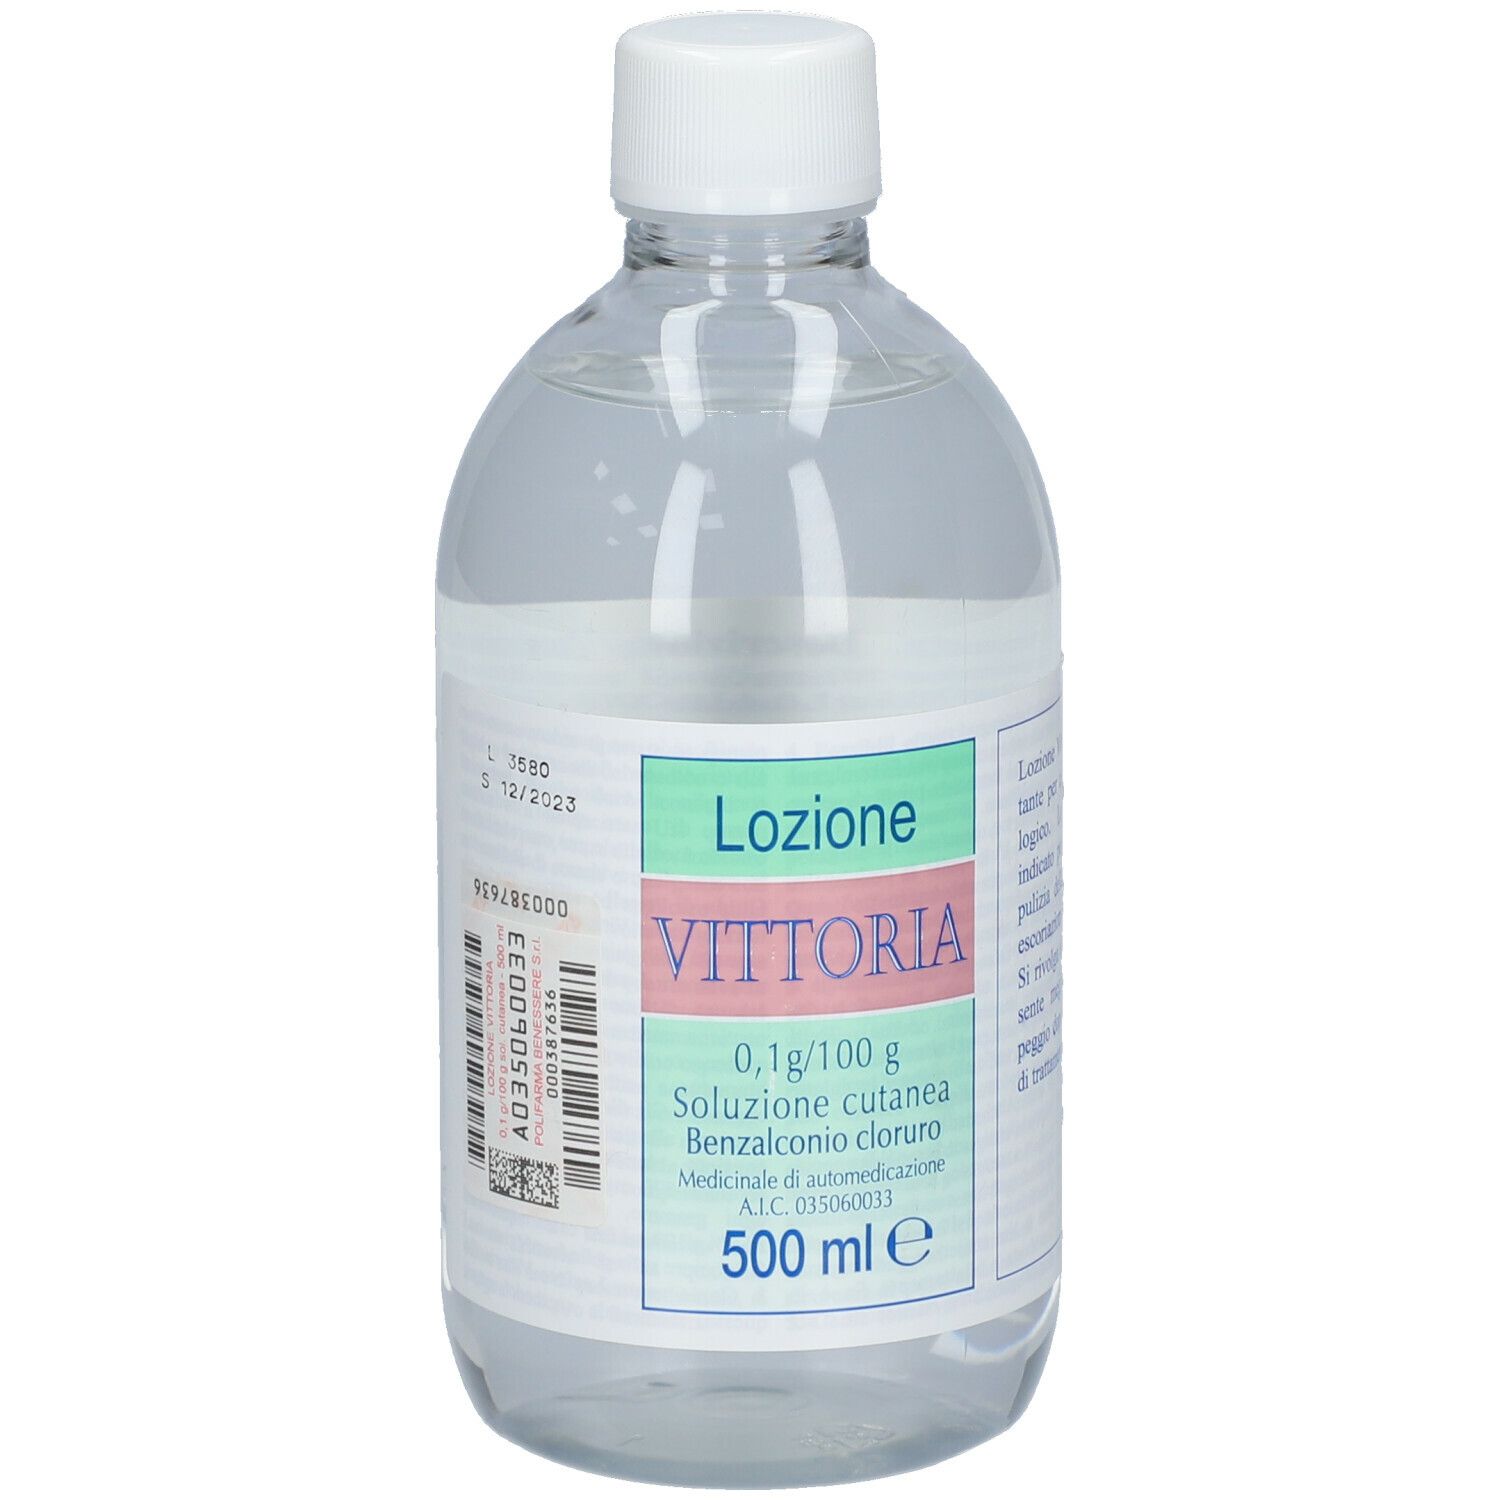 Lozione VITTORIA 500 ml